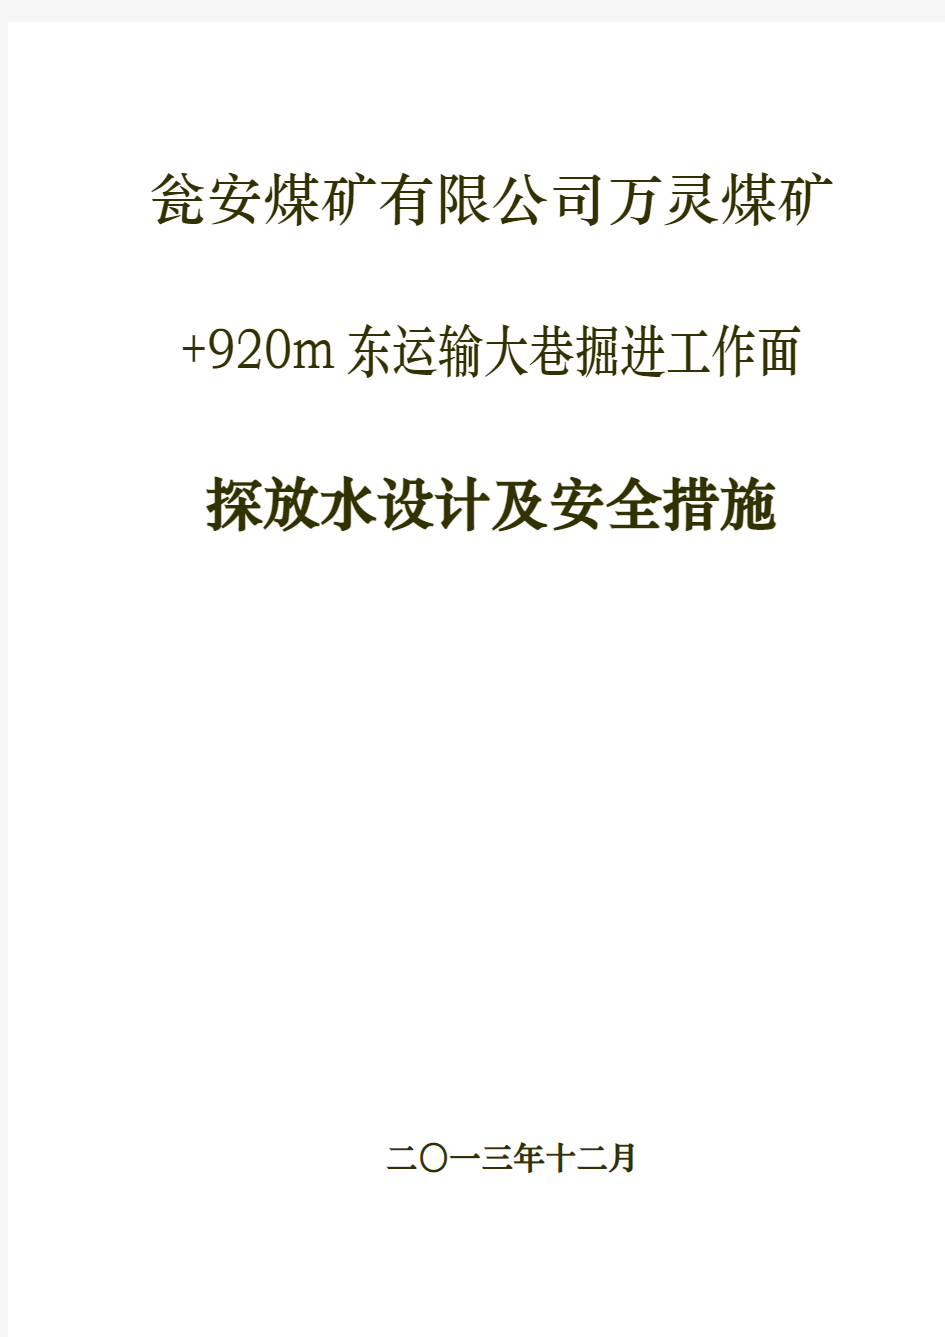 万灵煤矿2013年12月+920东运输大巷探放水设计及安全措施 - 副本